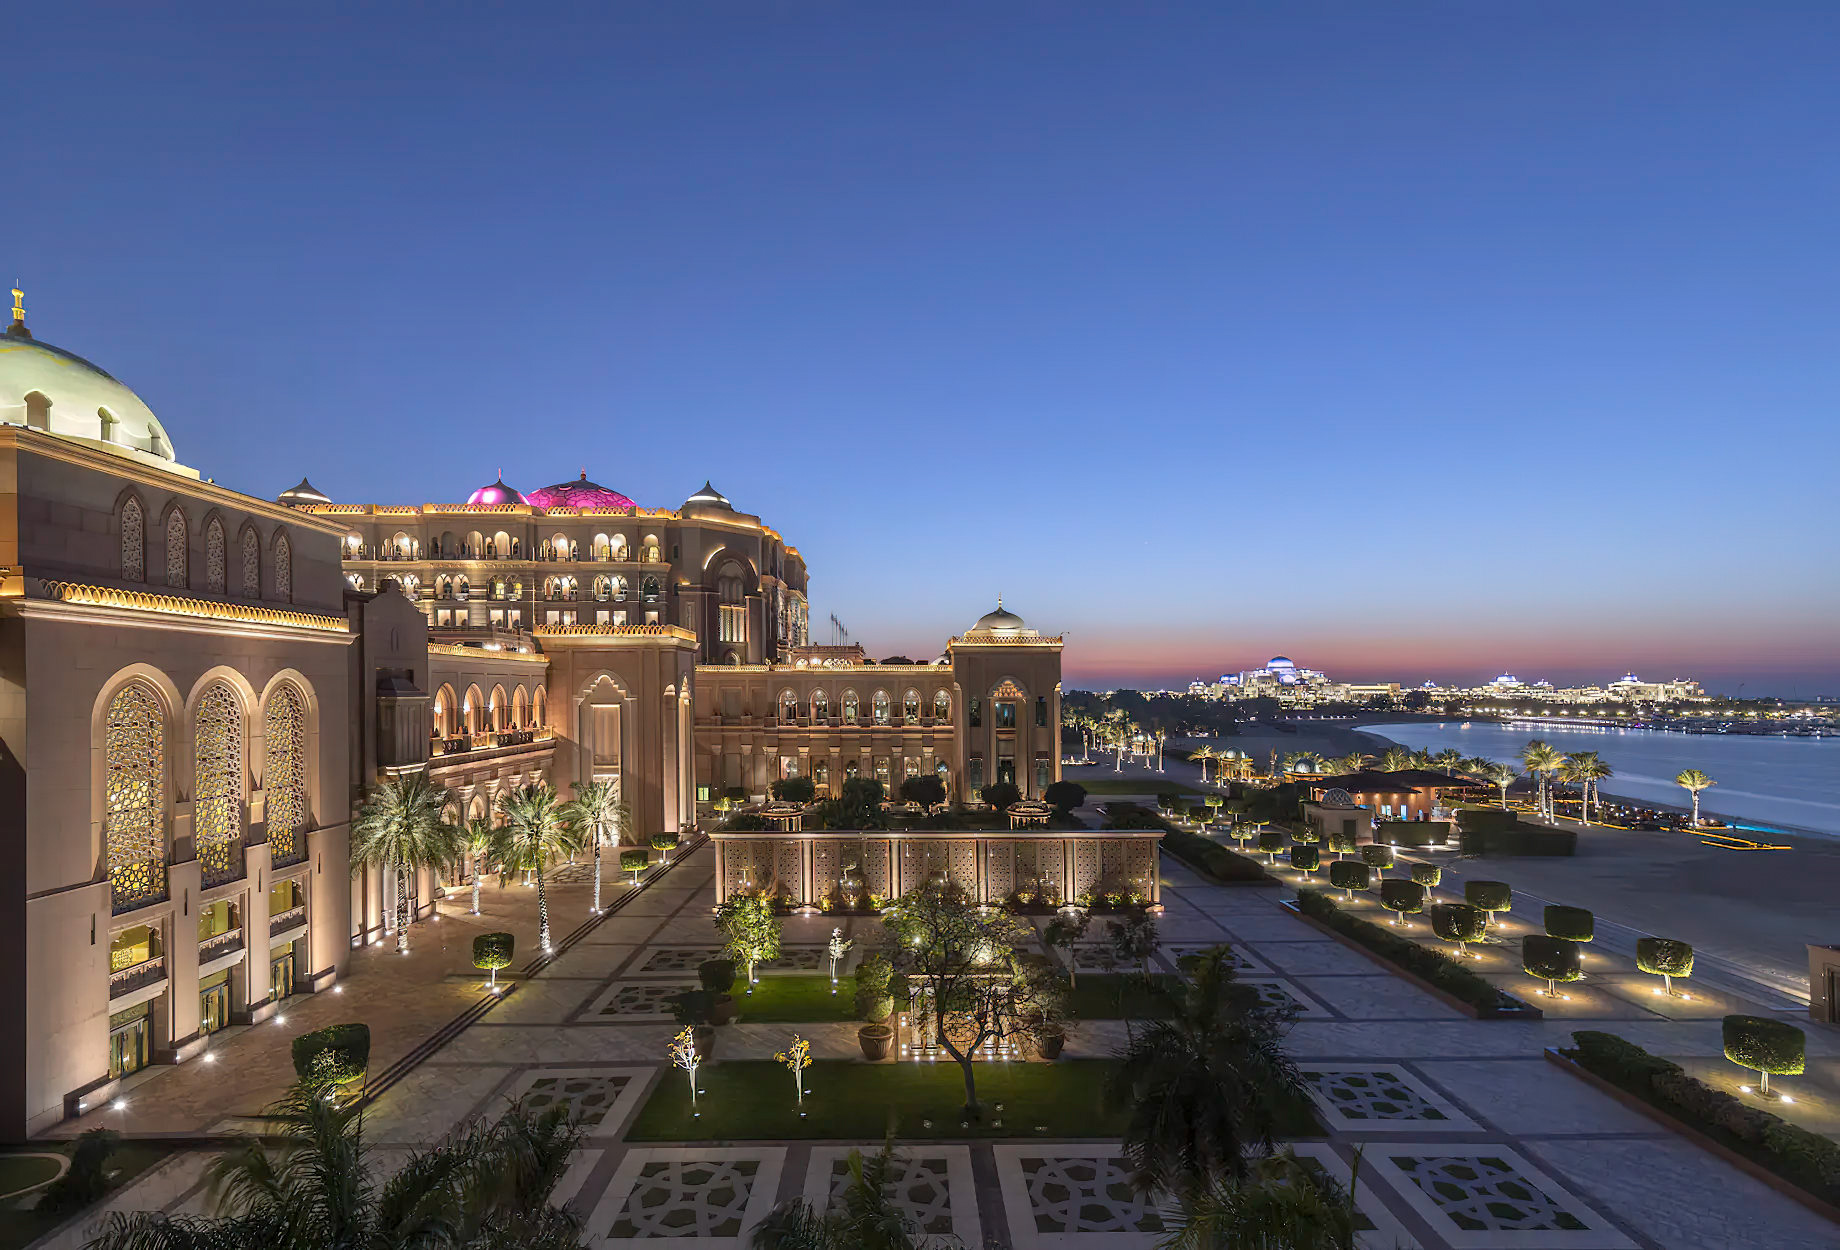 Emirates Palace Abu Dhabi Hotel – Abu Dhabi, UAE – Exterior Terrace Night View